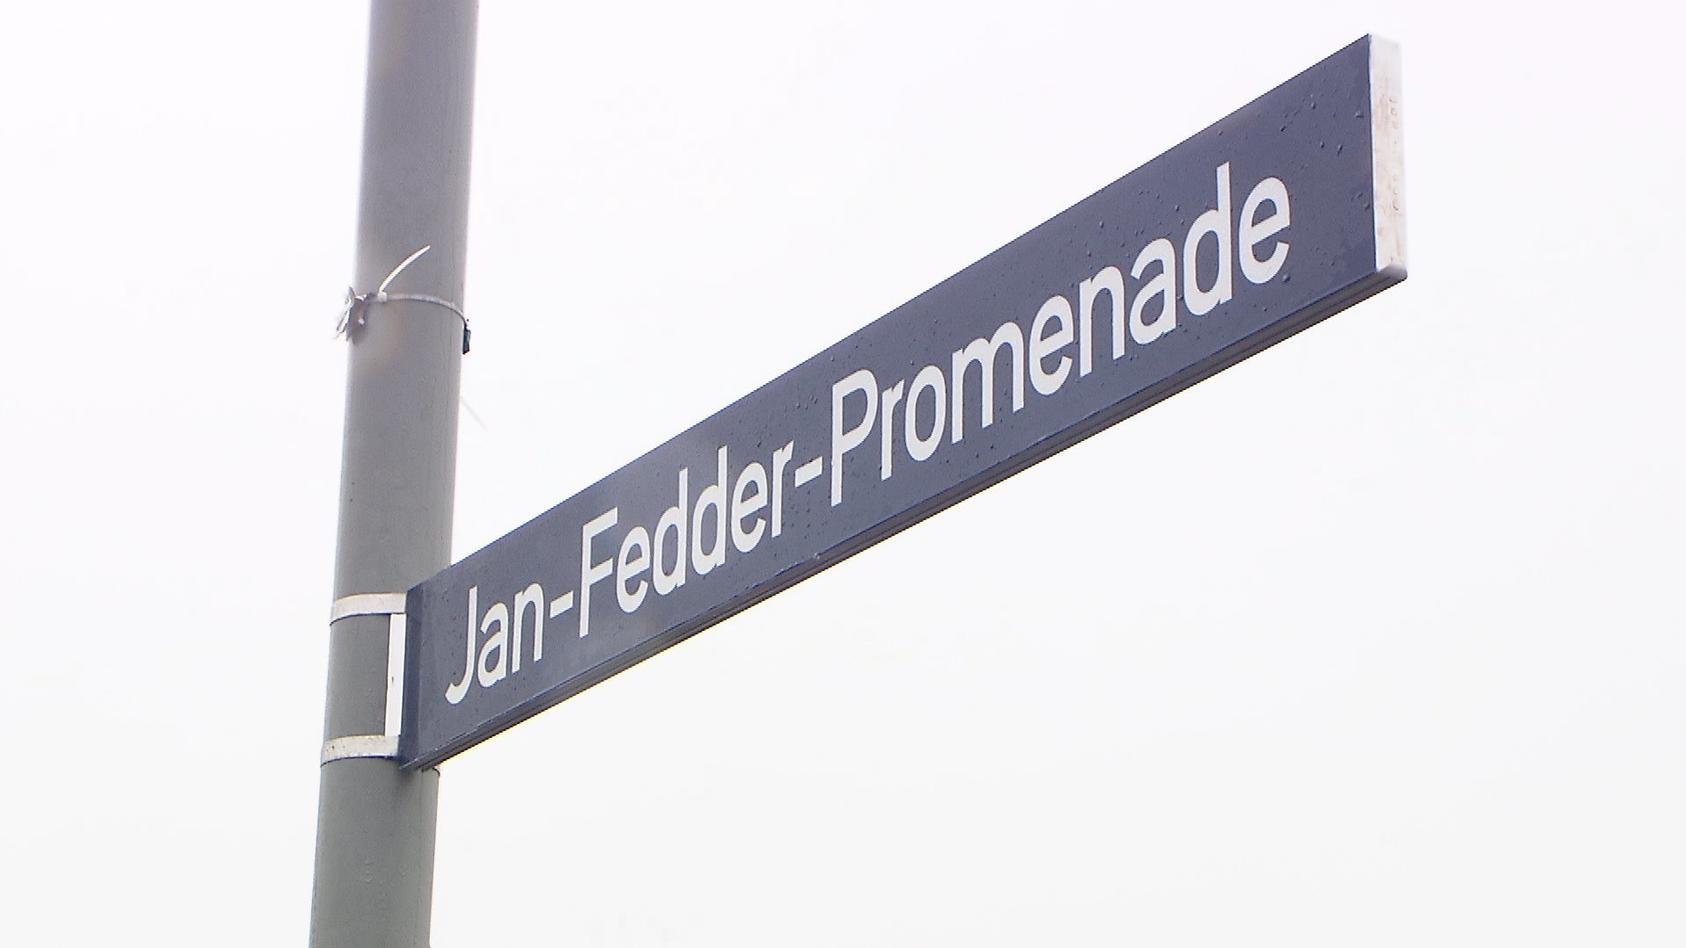 Am 14. Januar 2022 wurde die Jan Fedder-Promenade am Hamburger Hafen eingeweiht.